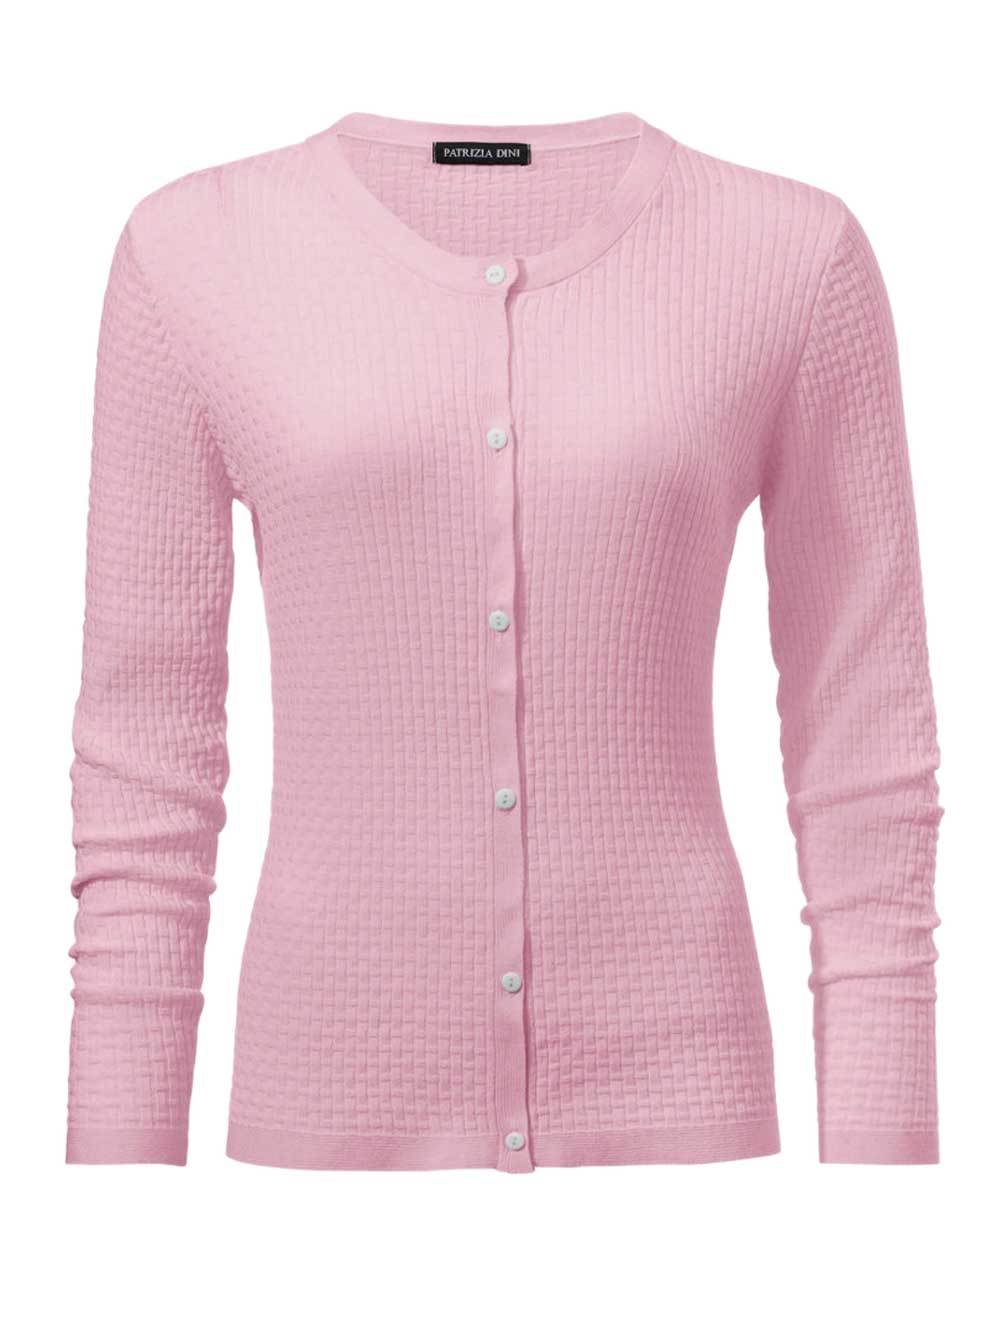 140.496 PATRIZIA DINI Damen Designer-Cardigan Strickjacke Uni Basic Rosé Rosa 40 - 52